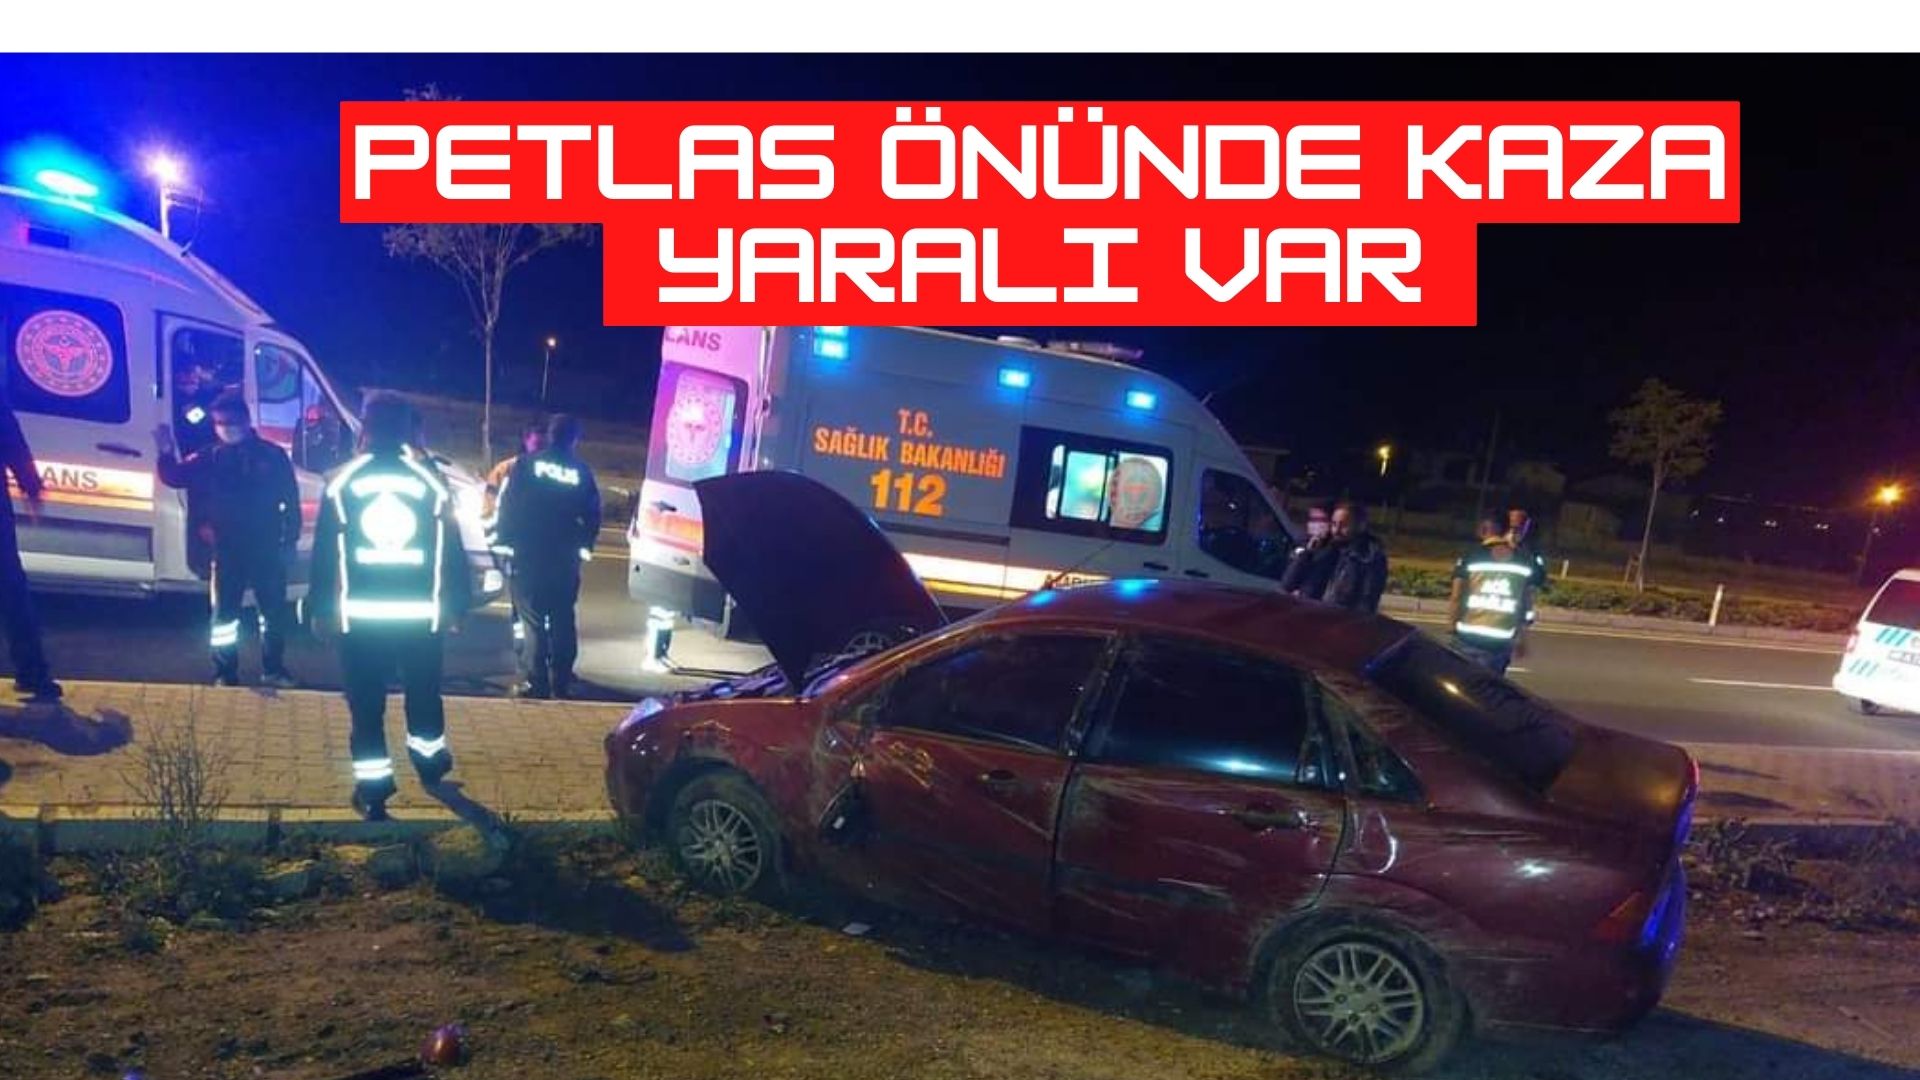 Kırşehir Petlas Önünde kaza: 1 yaralı